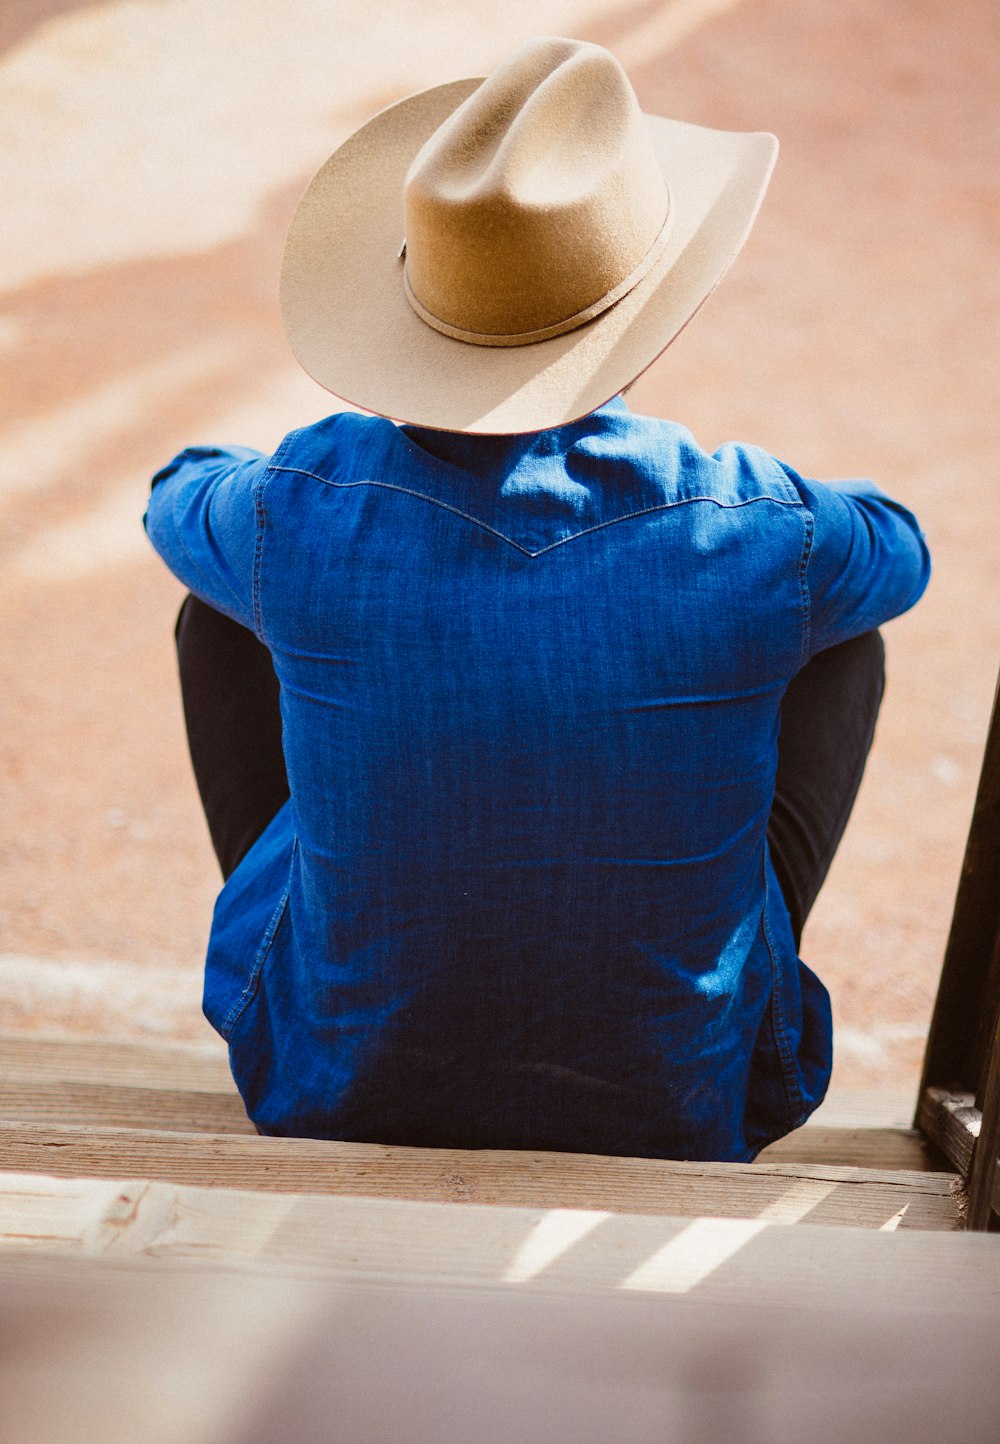 파란색 드레스 셔츠와 베이지색 카우보이 모자를 쓴 남자